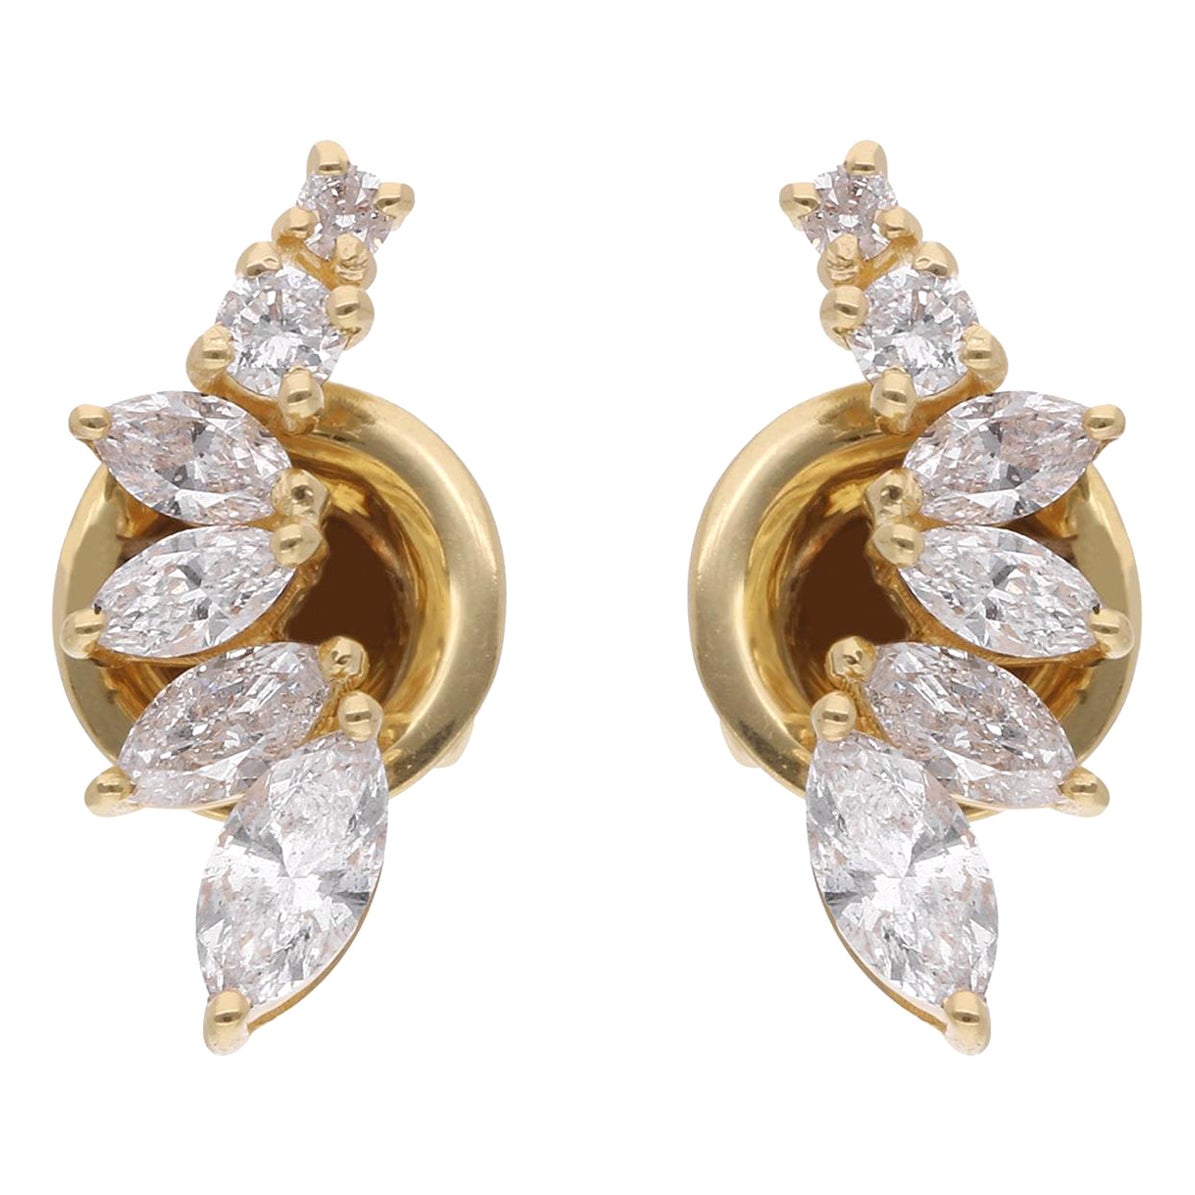 Clous d'oreilles en or jaune 14 carats avec diamants ronds et marquises, fabrication artisanale